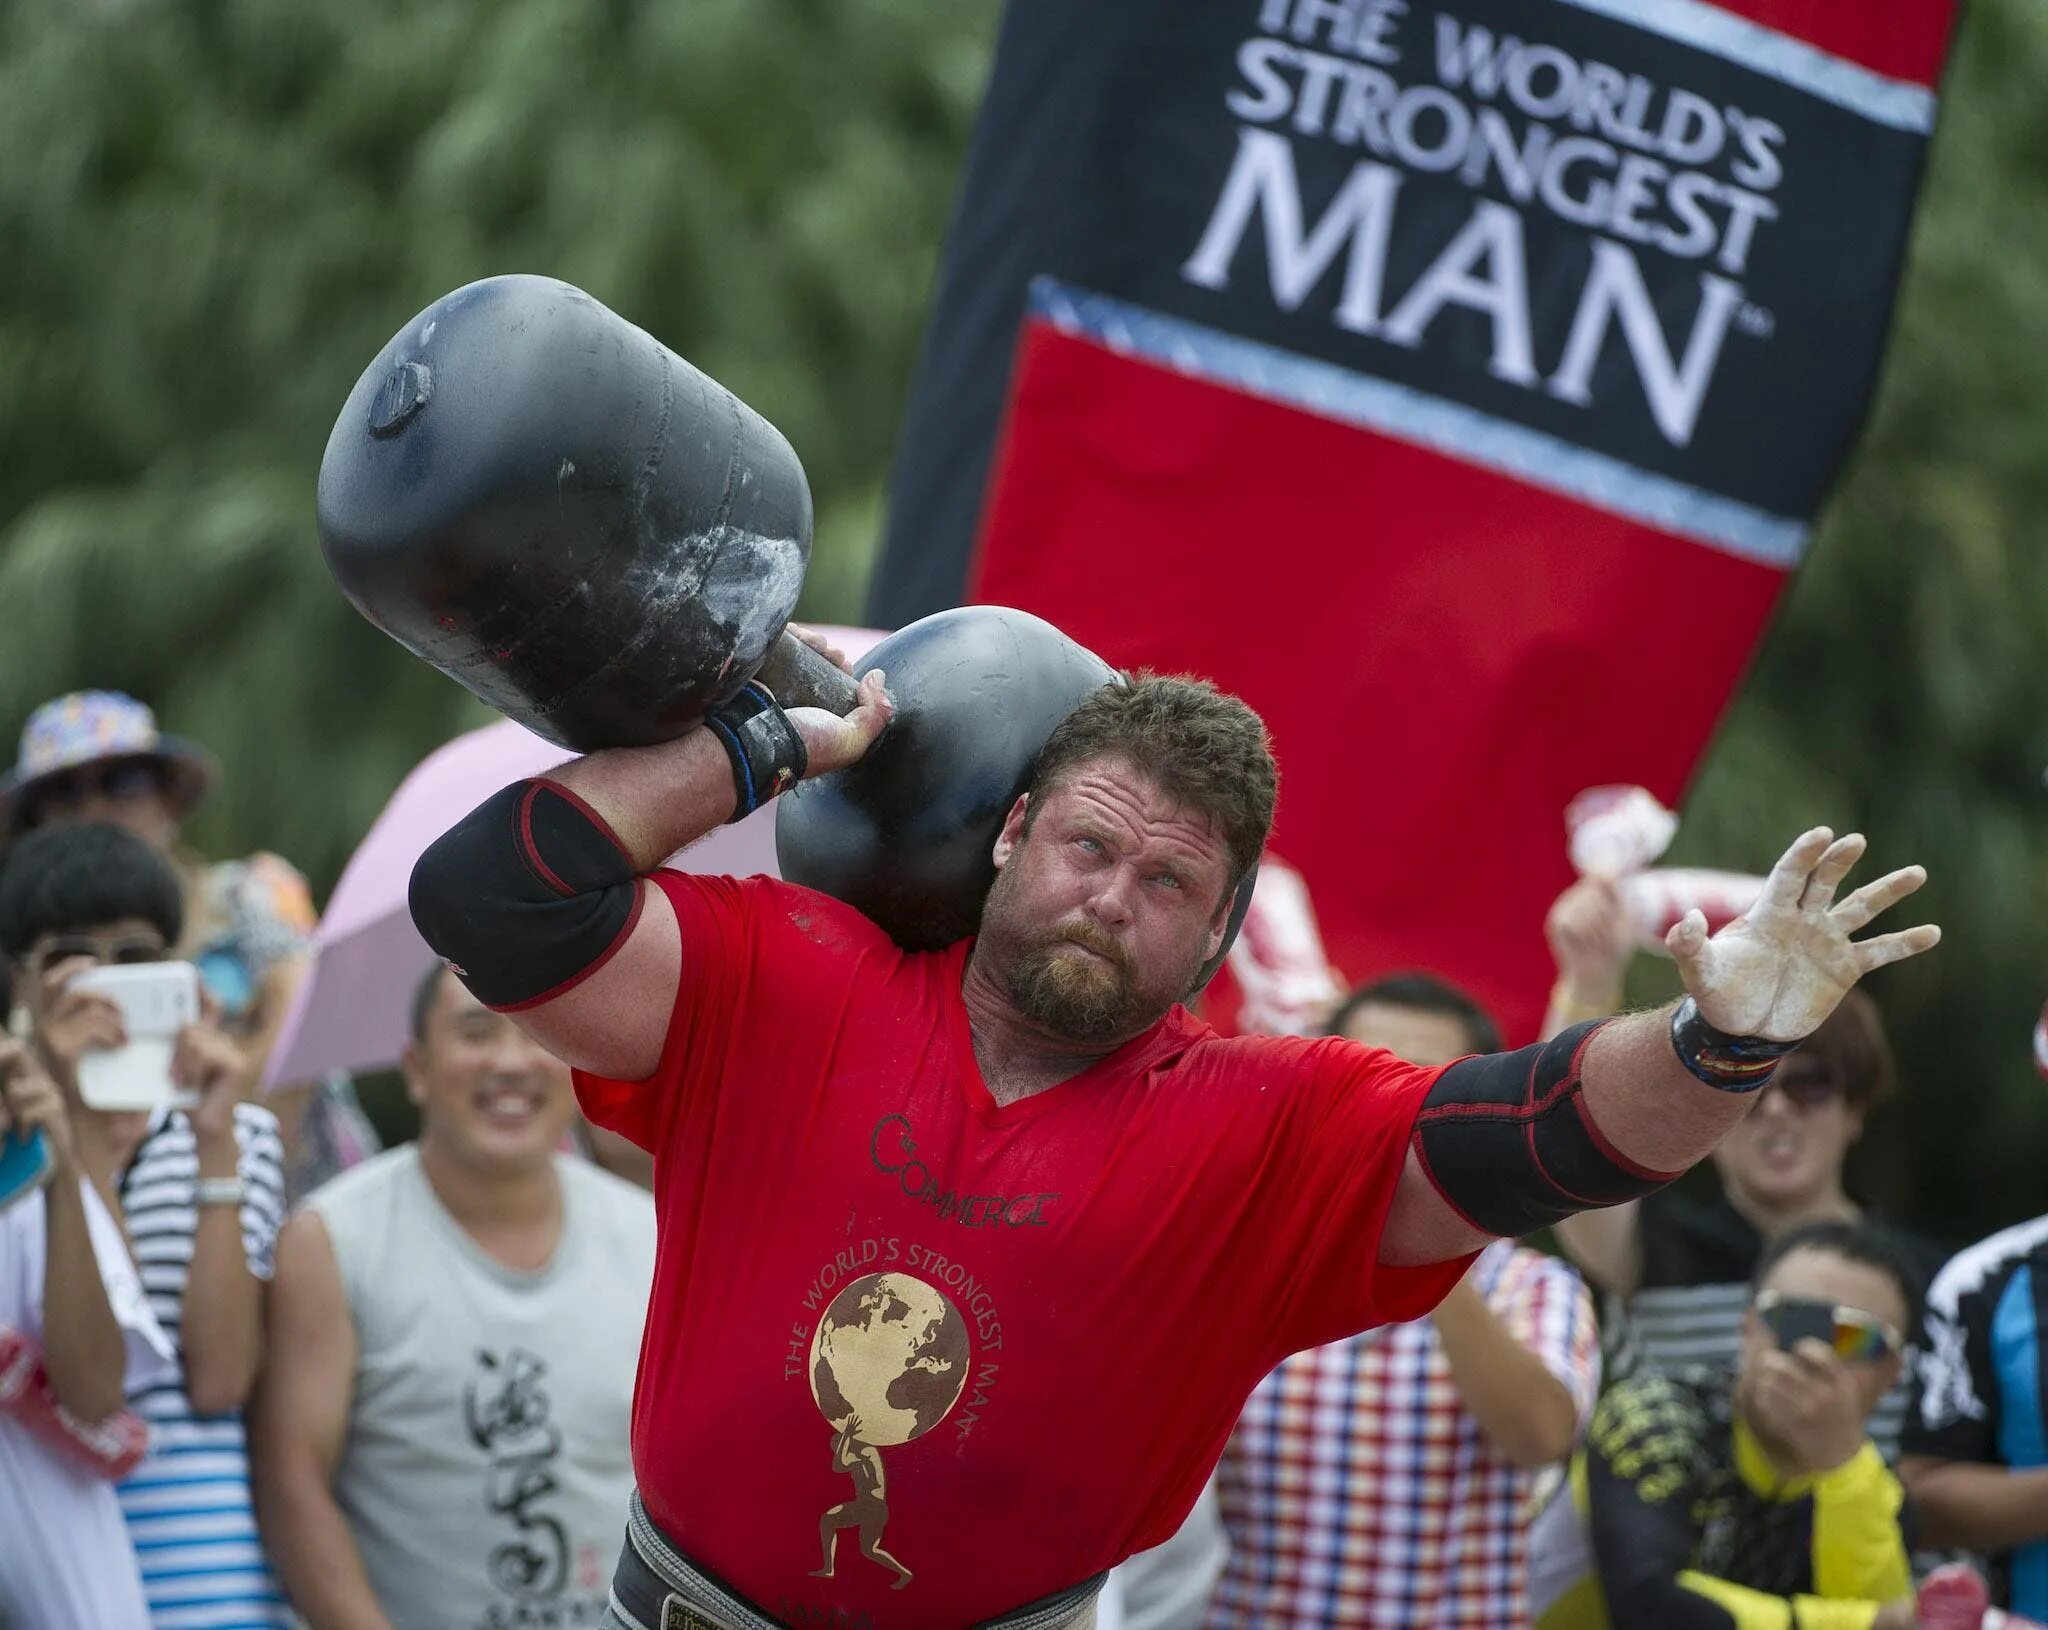 World strongest man. Майк Бурк стронгмен. Самый сильный человек в мире. Strongman соревнования. Самый сильный человек соревнования.